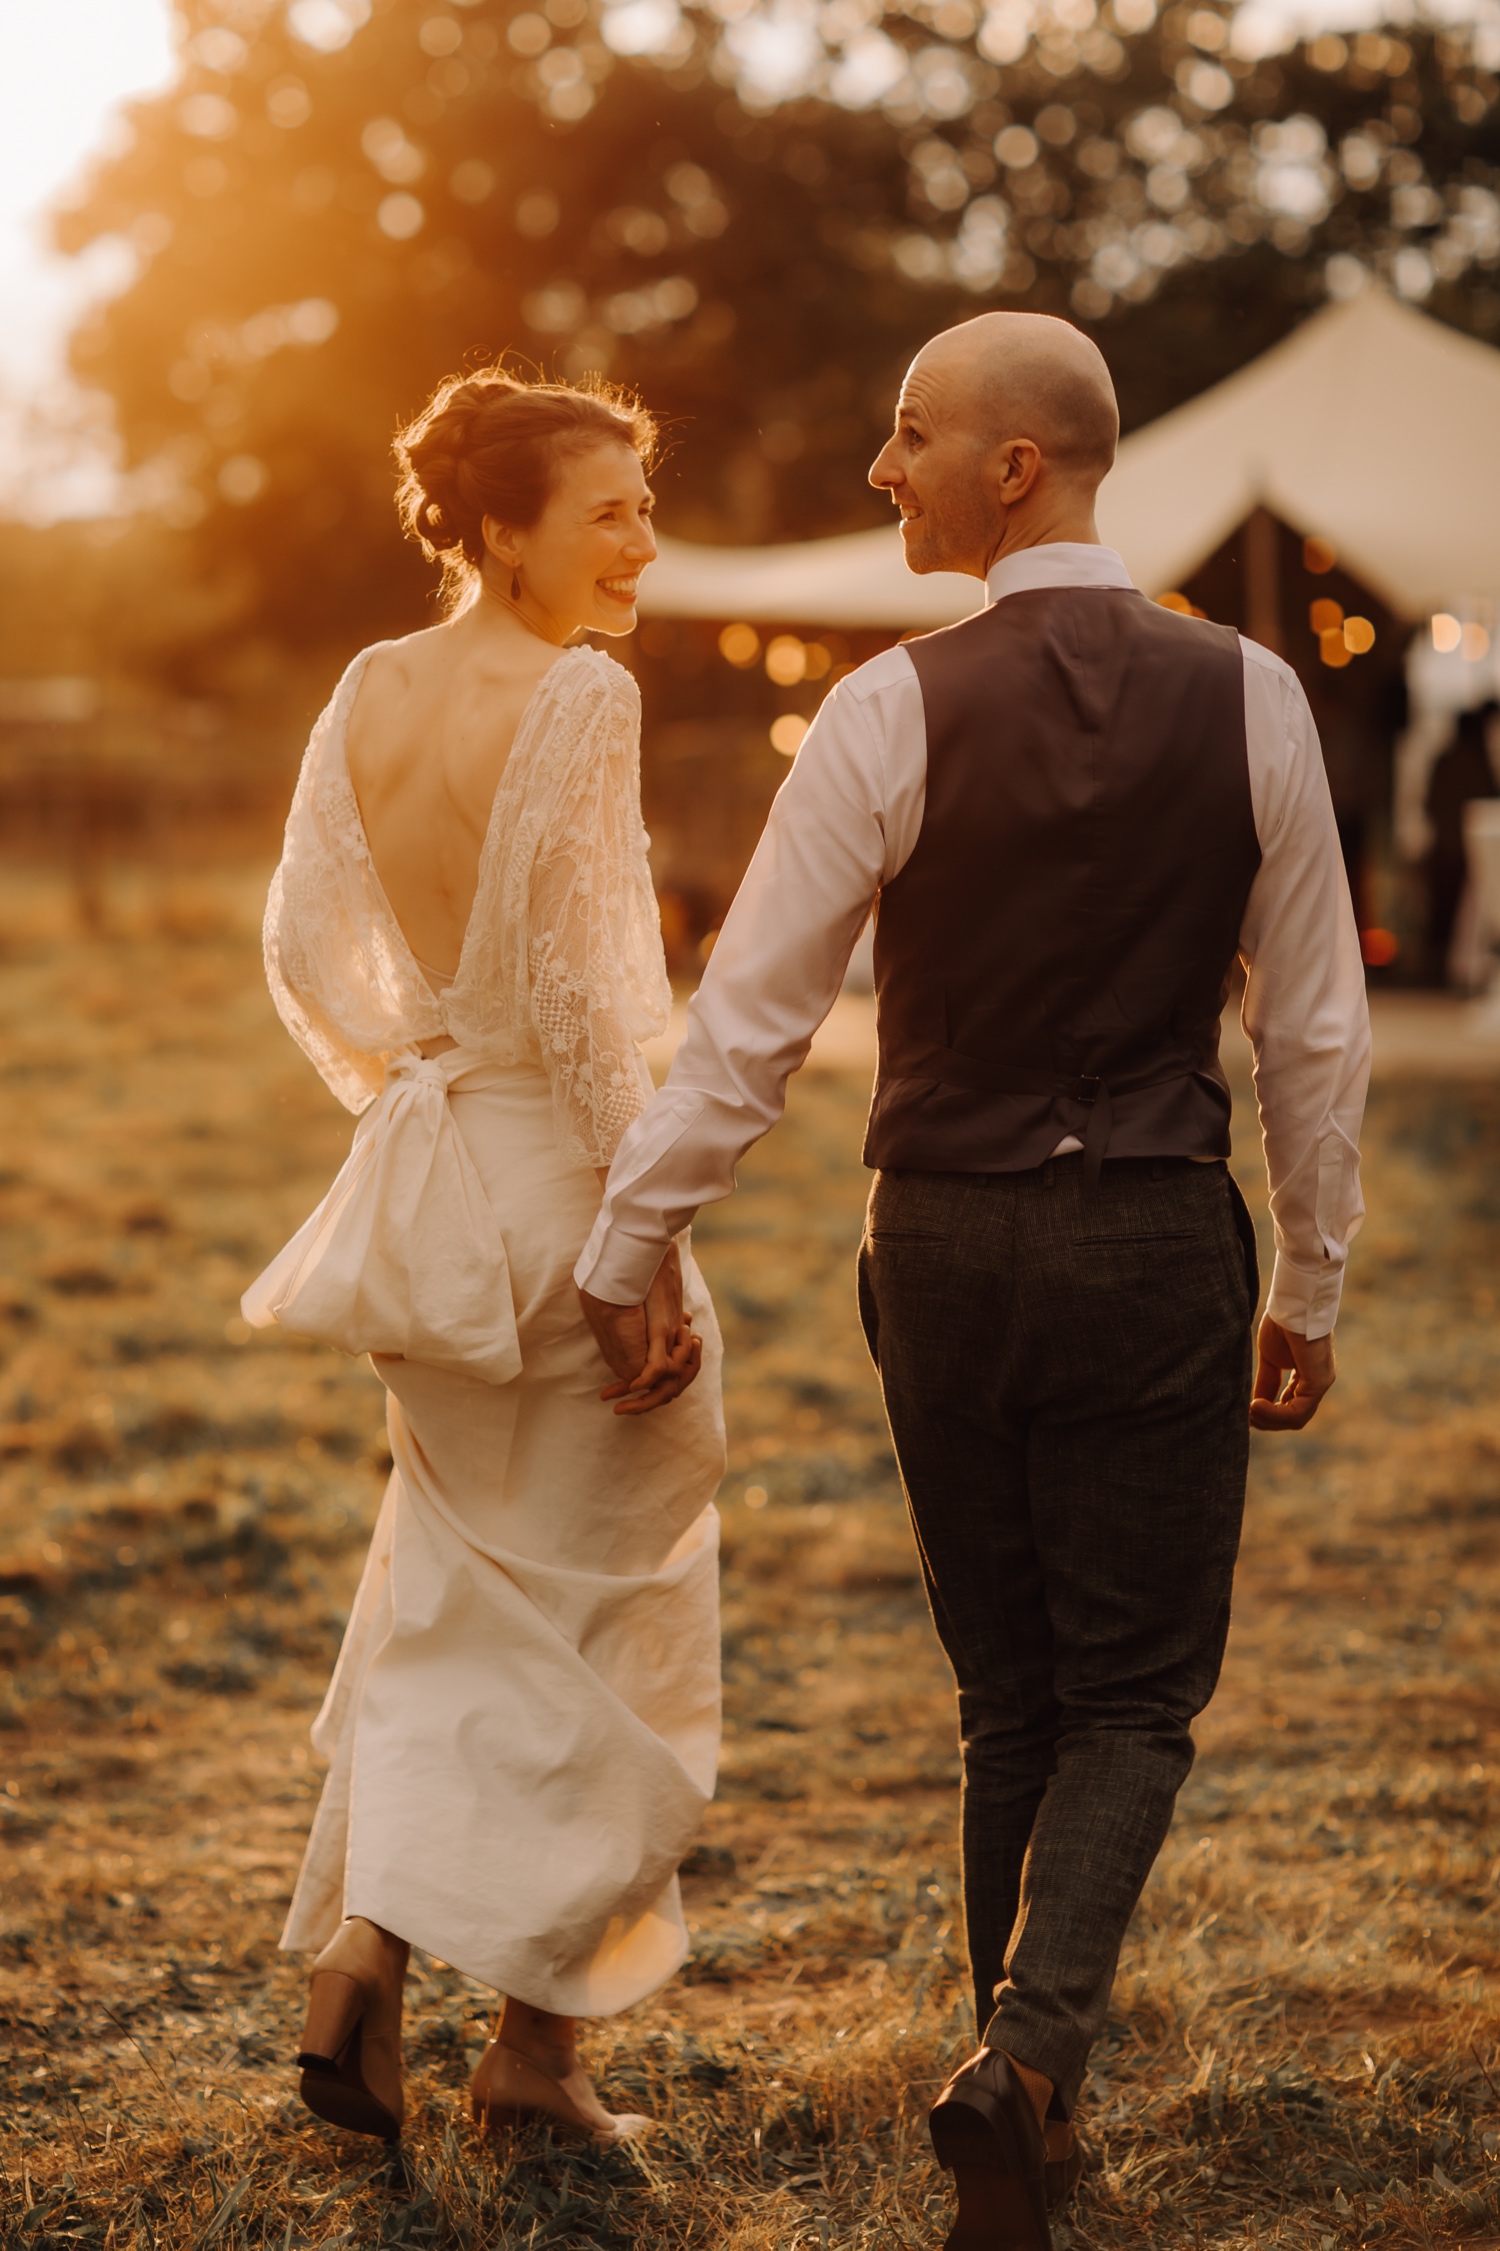 Huwelijksfotograaf Limburg - bruidspaar wandelt richting tent tijdens zonsondergang